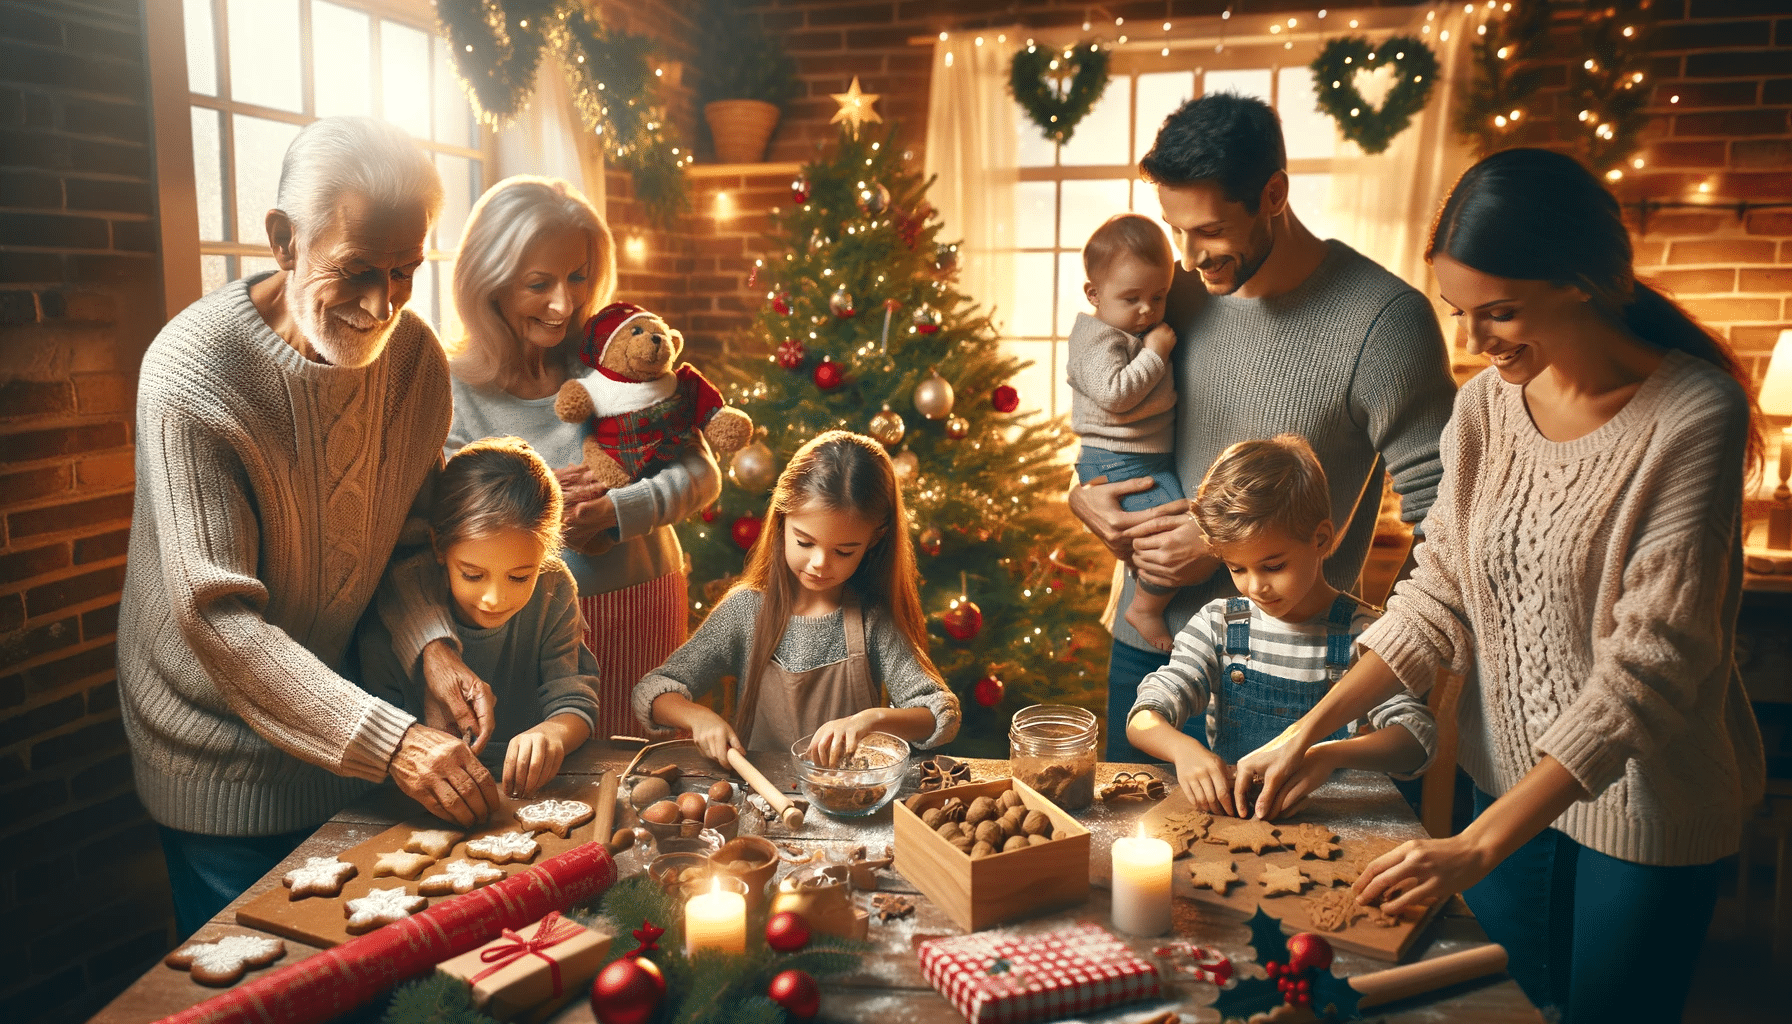 Des traditions de Noël pour renforcer les liens familiaux